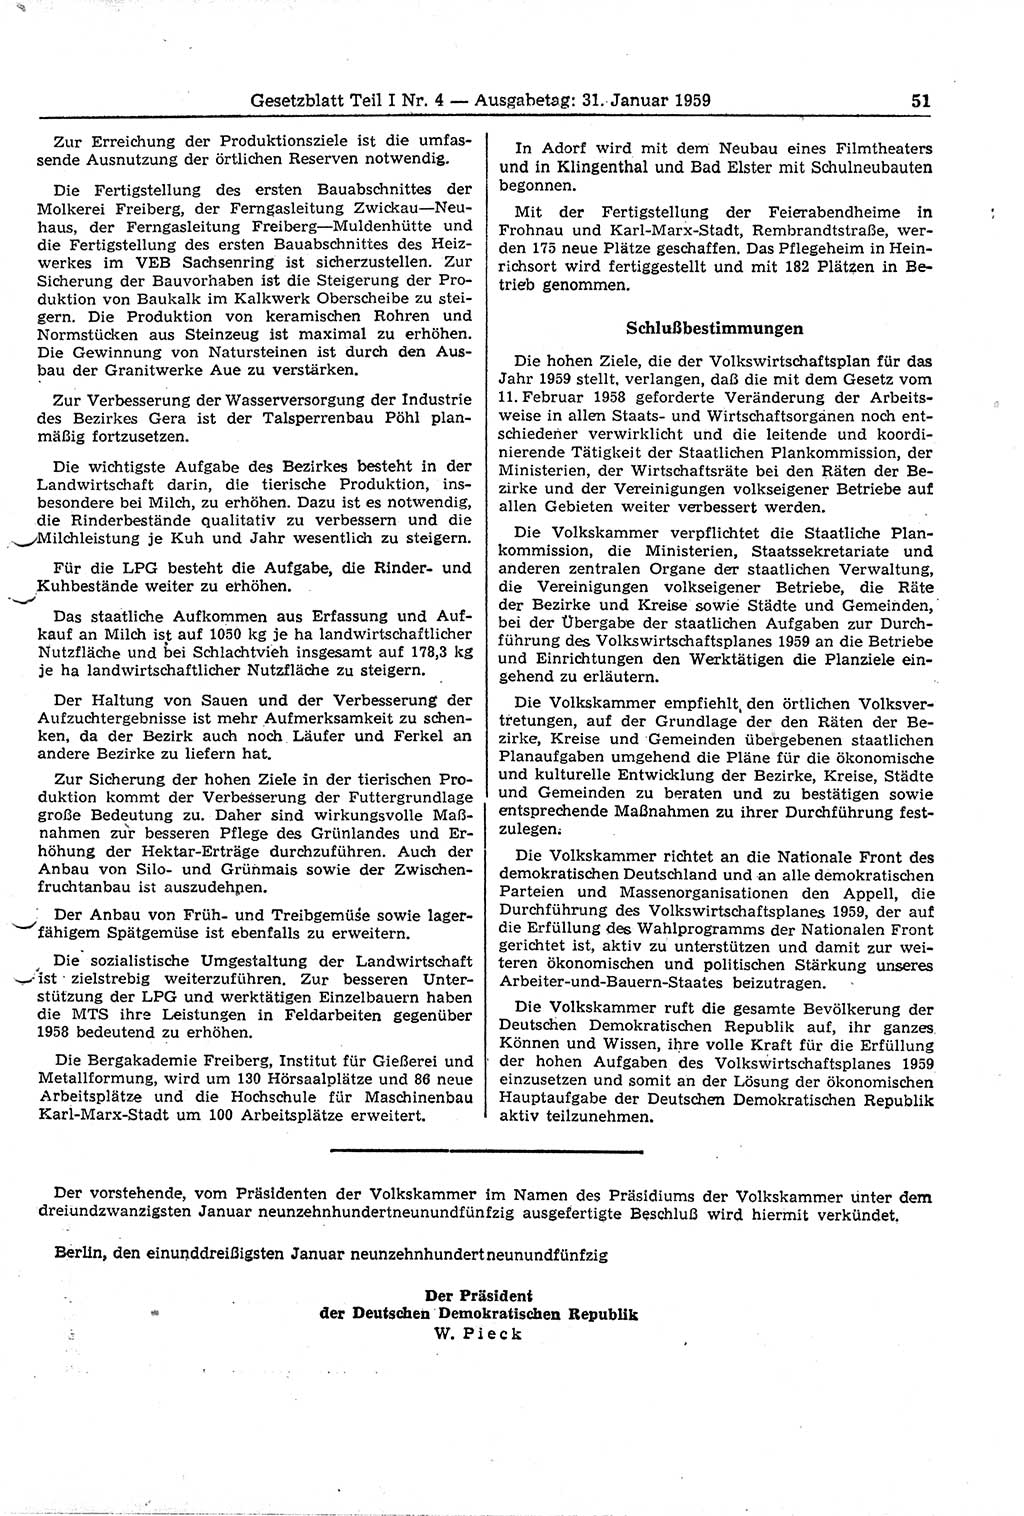 Gesetzblatt (GBl.) der Deutschen Demokratischen Republik (DDR) Teil Ⅰ 1959, Seite 51 (GBl. DDR Ⅰ 1959, S. 51)